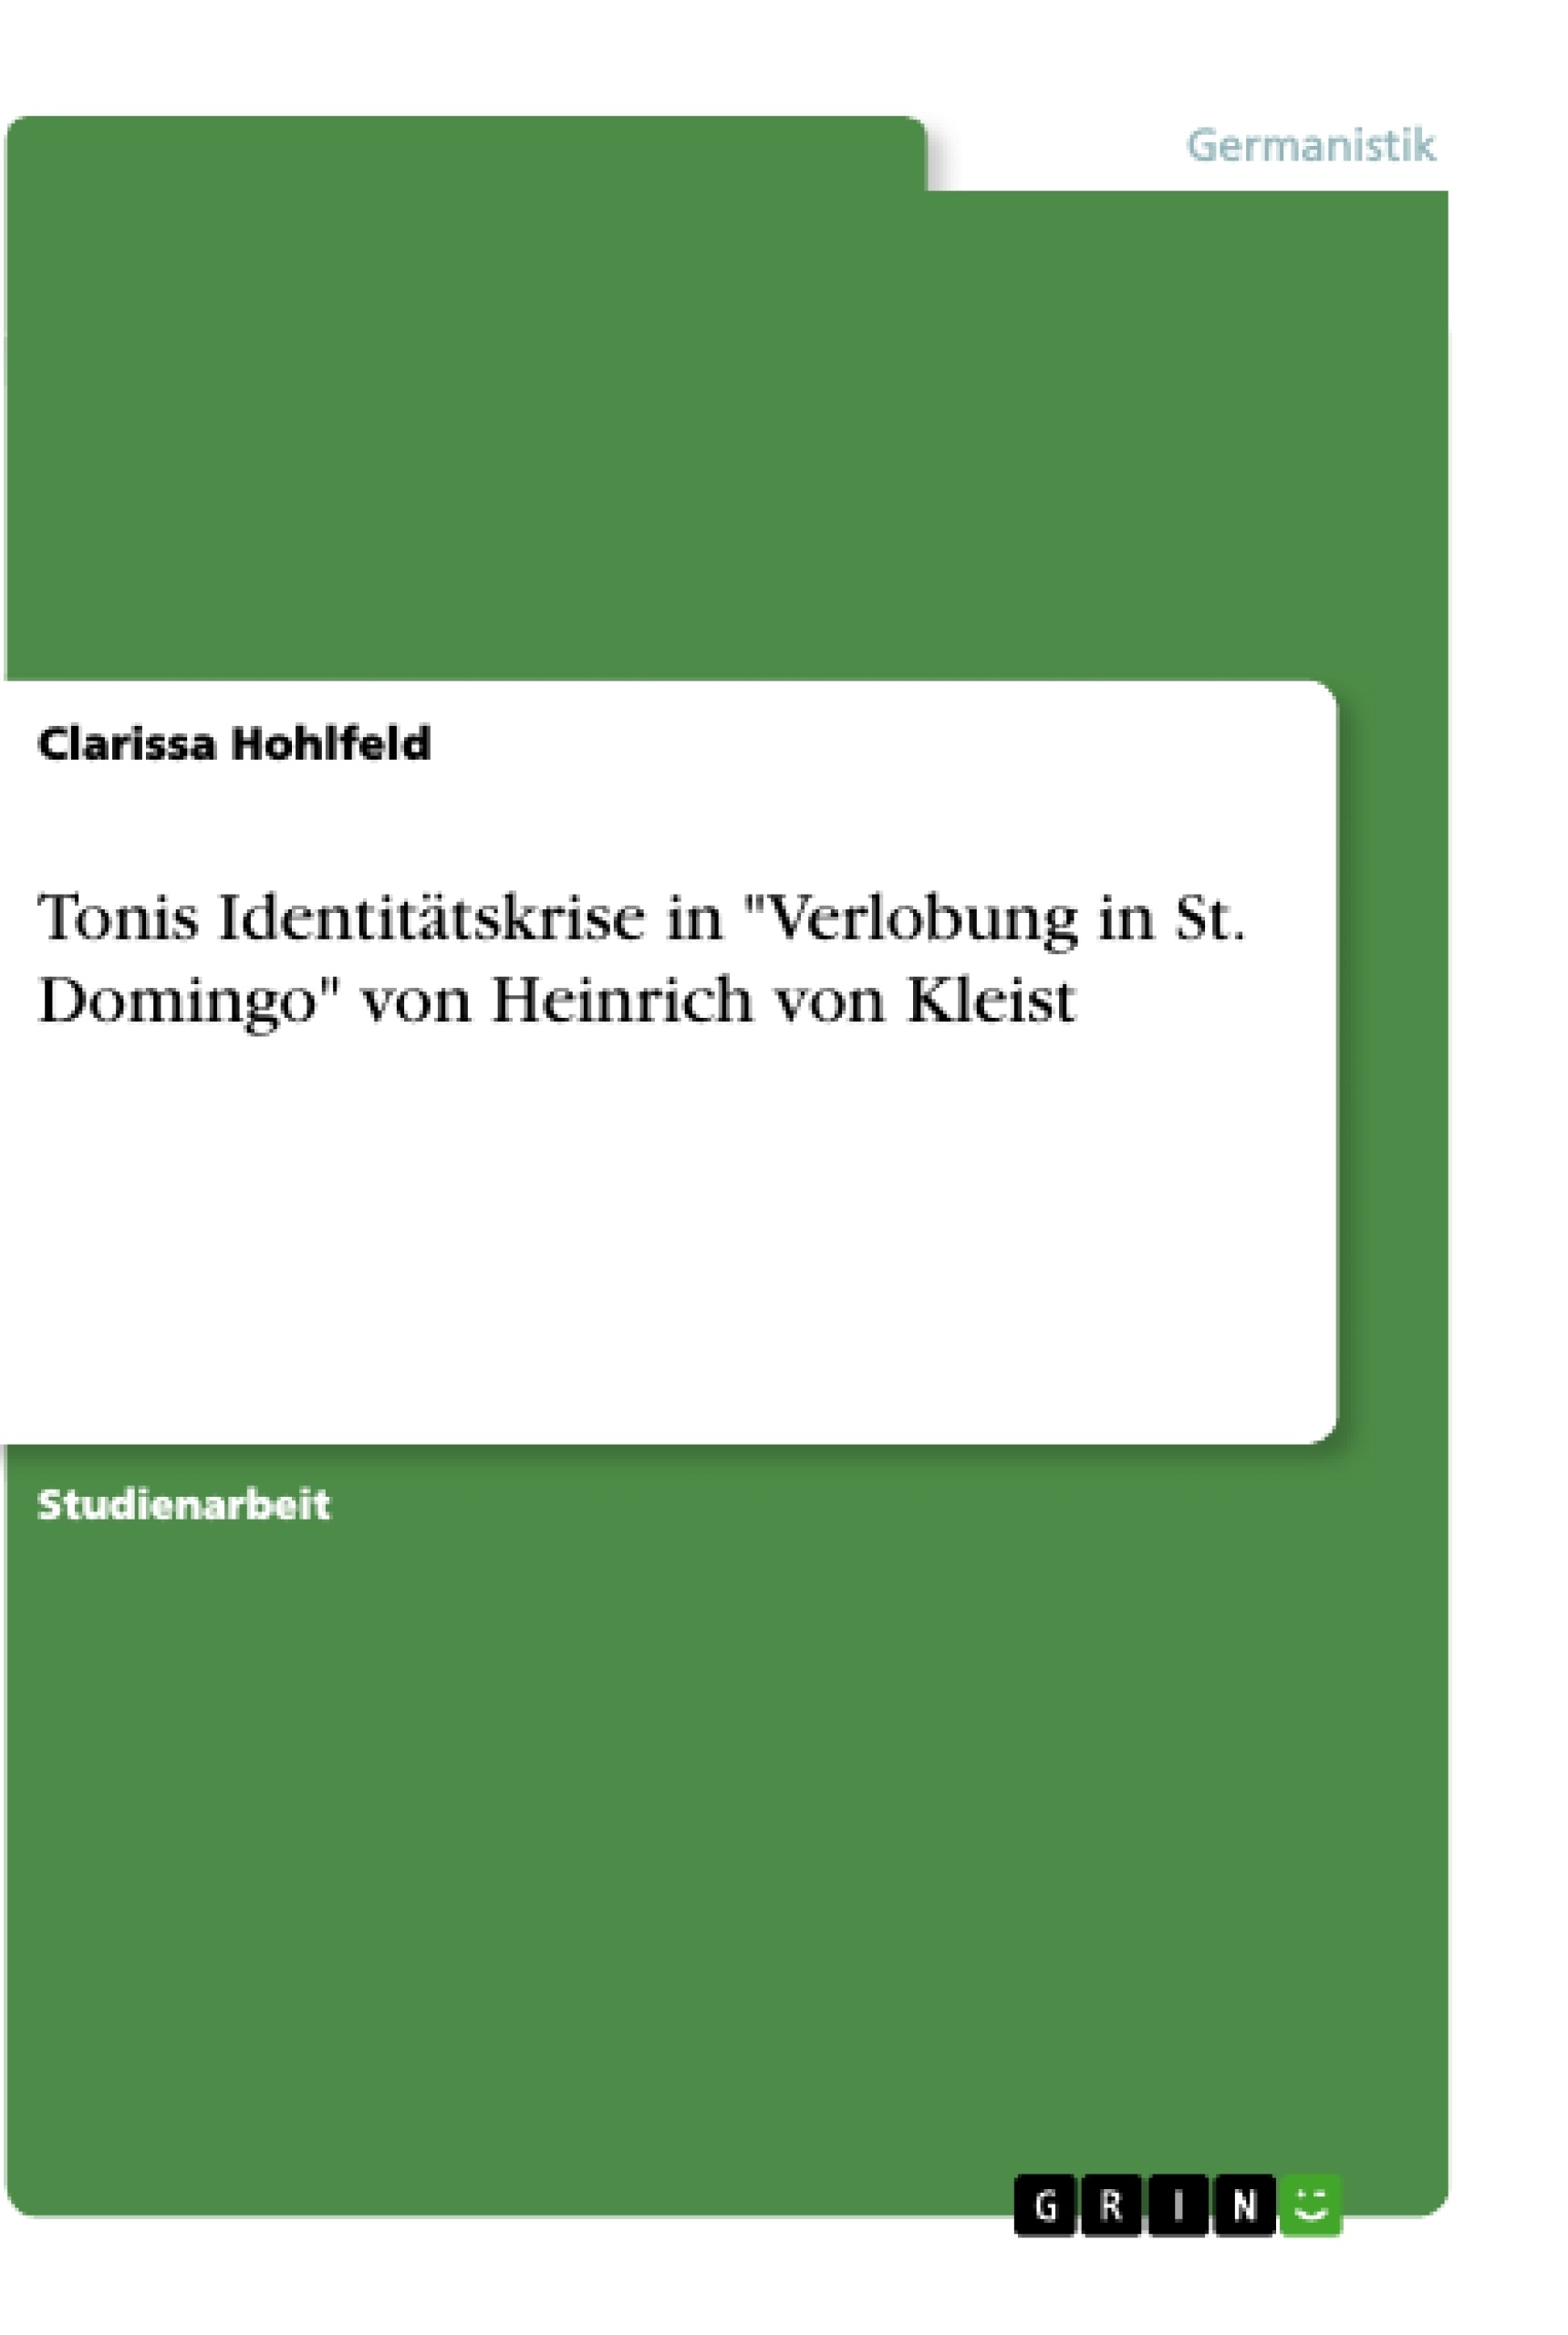 Titre: Tonis Identitätskrise in "Verlobung in St. Domingo" von Heinrich von Kleist